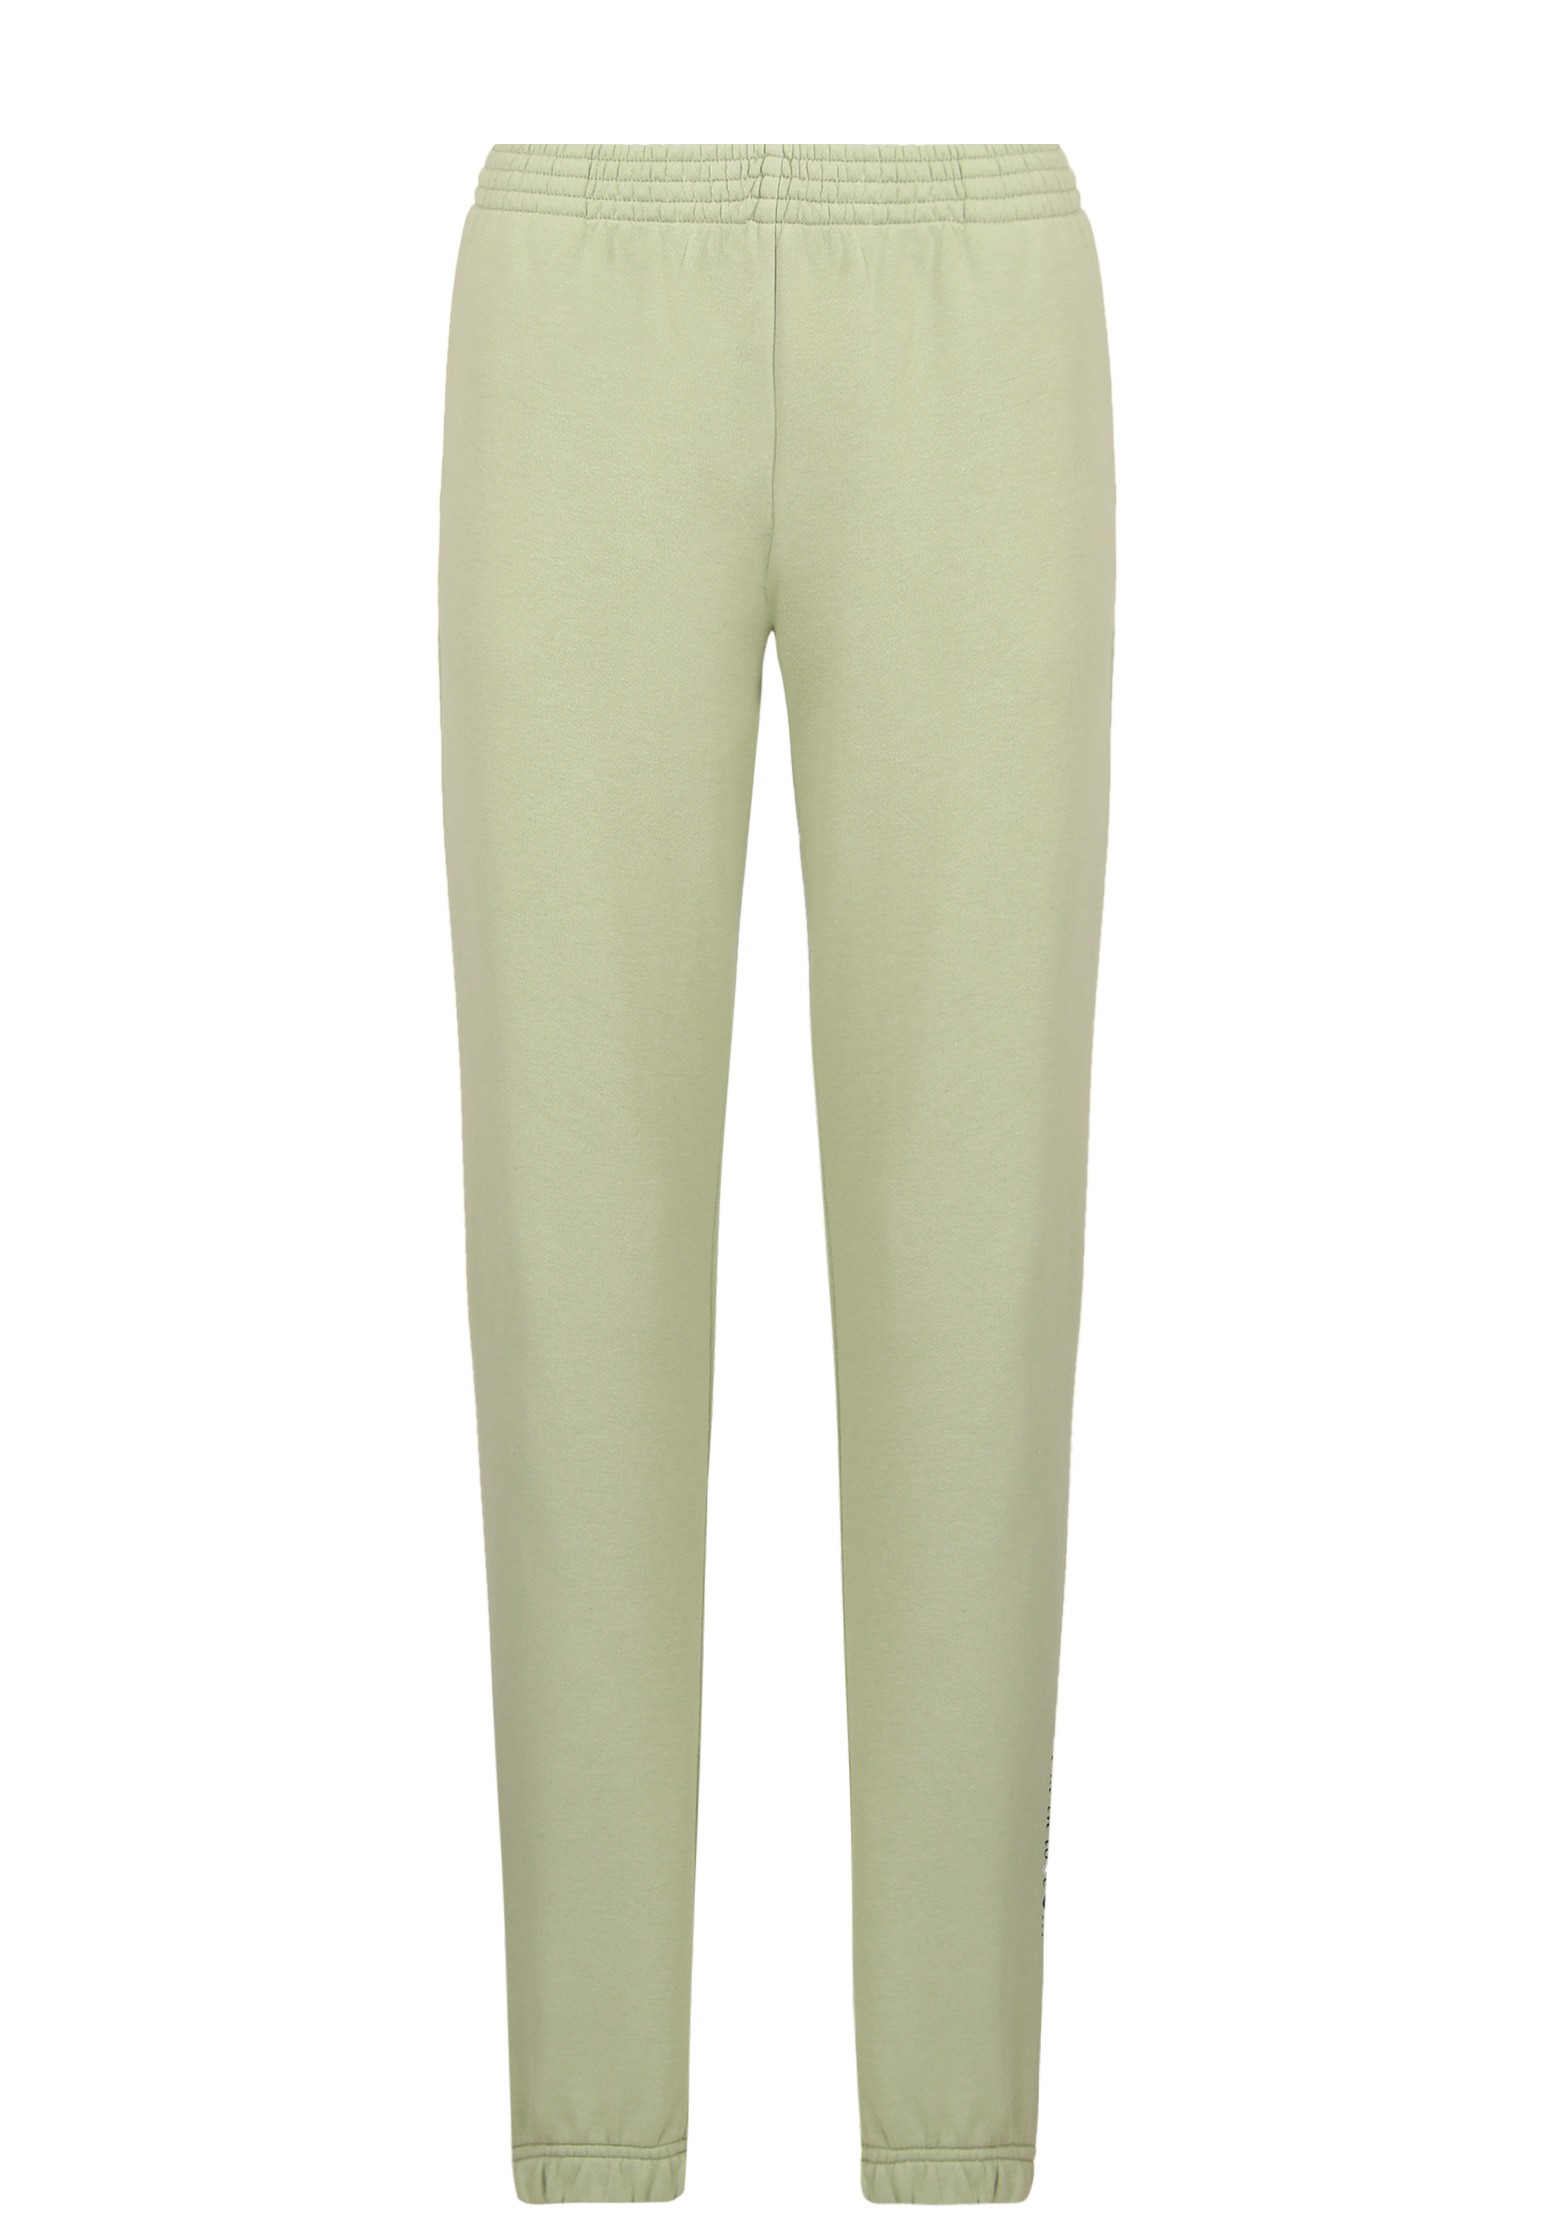 Спортивные брюки женские ELYTS 128053 зеленые XS